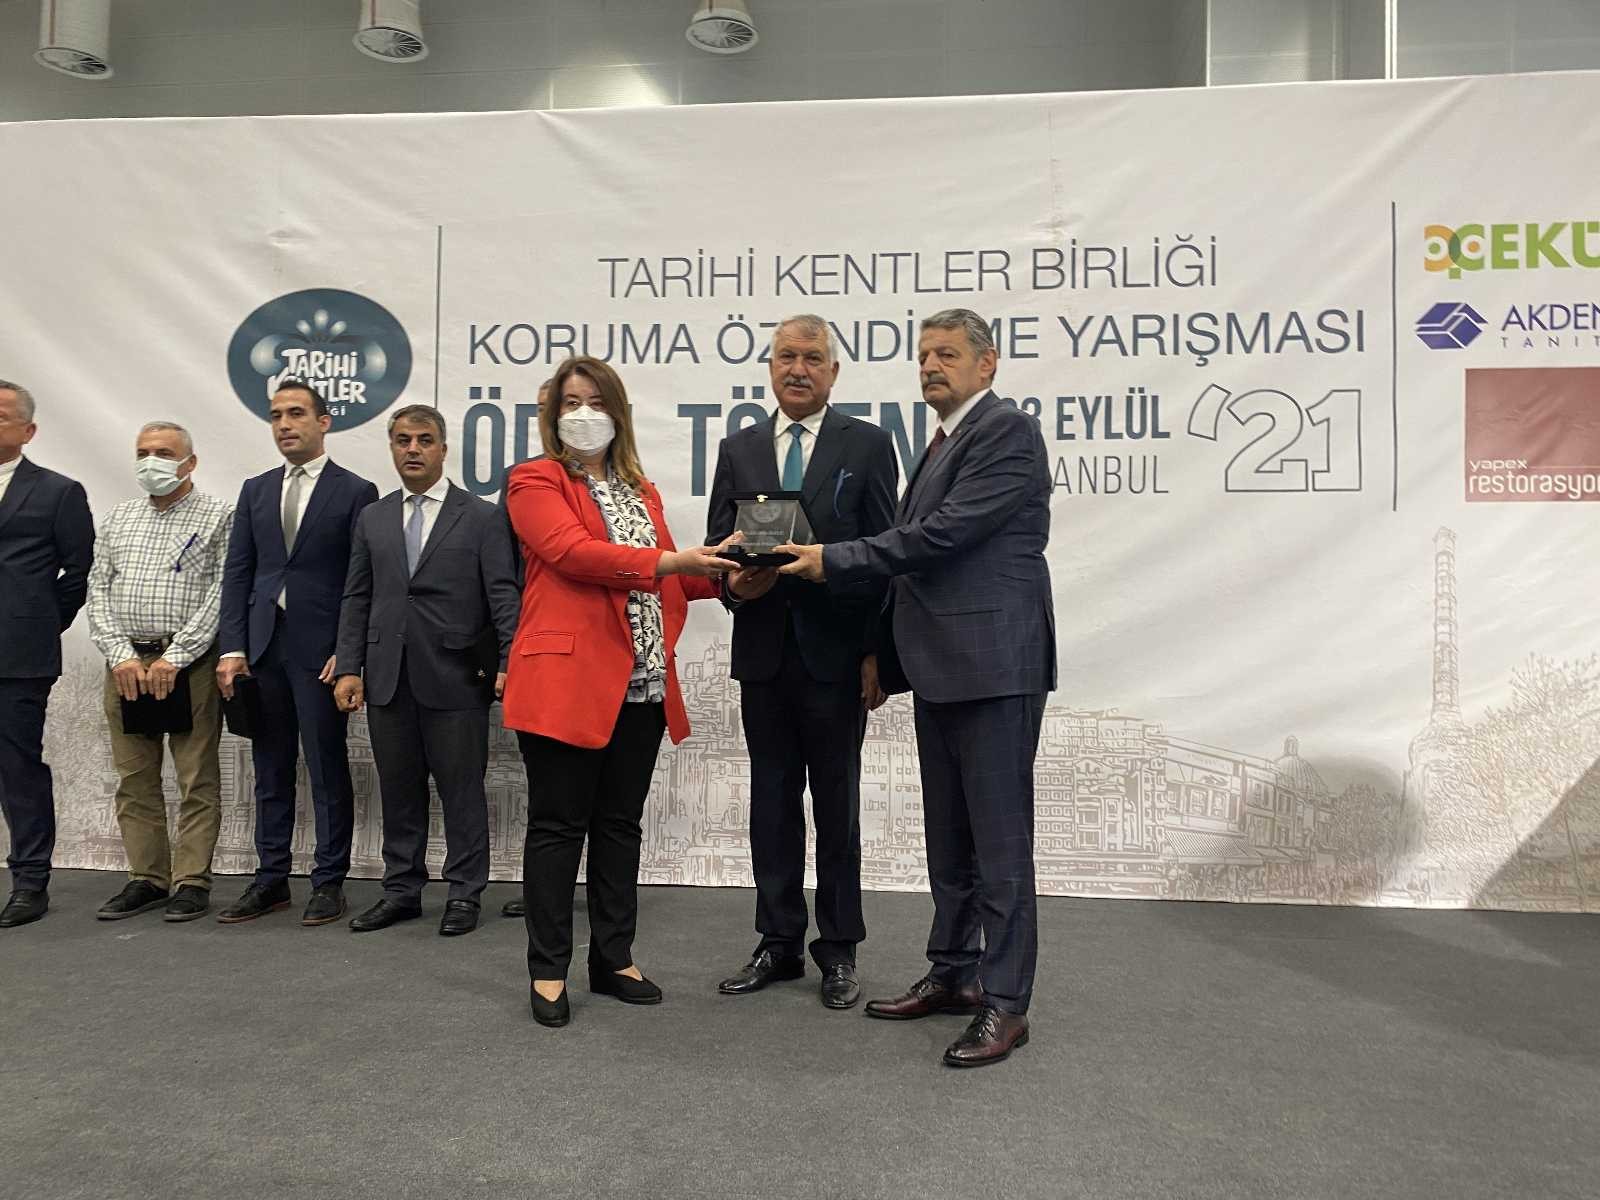 Tarihi Kentler Birliği’nden Pamukkale Belediyesi’ne ödül #denizli